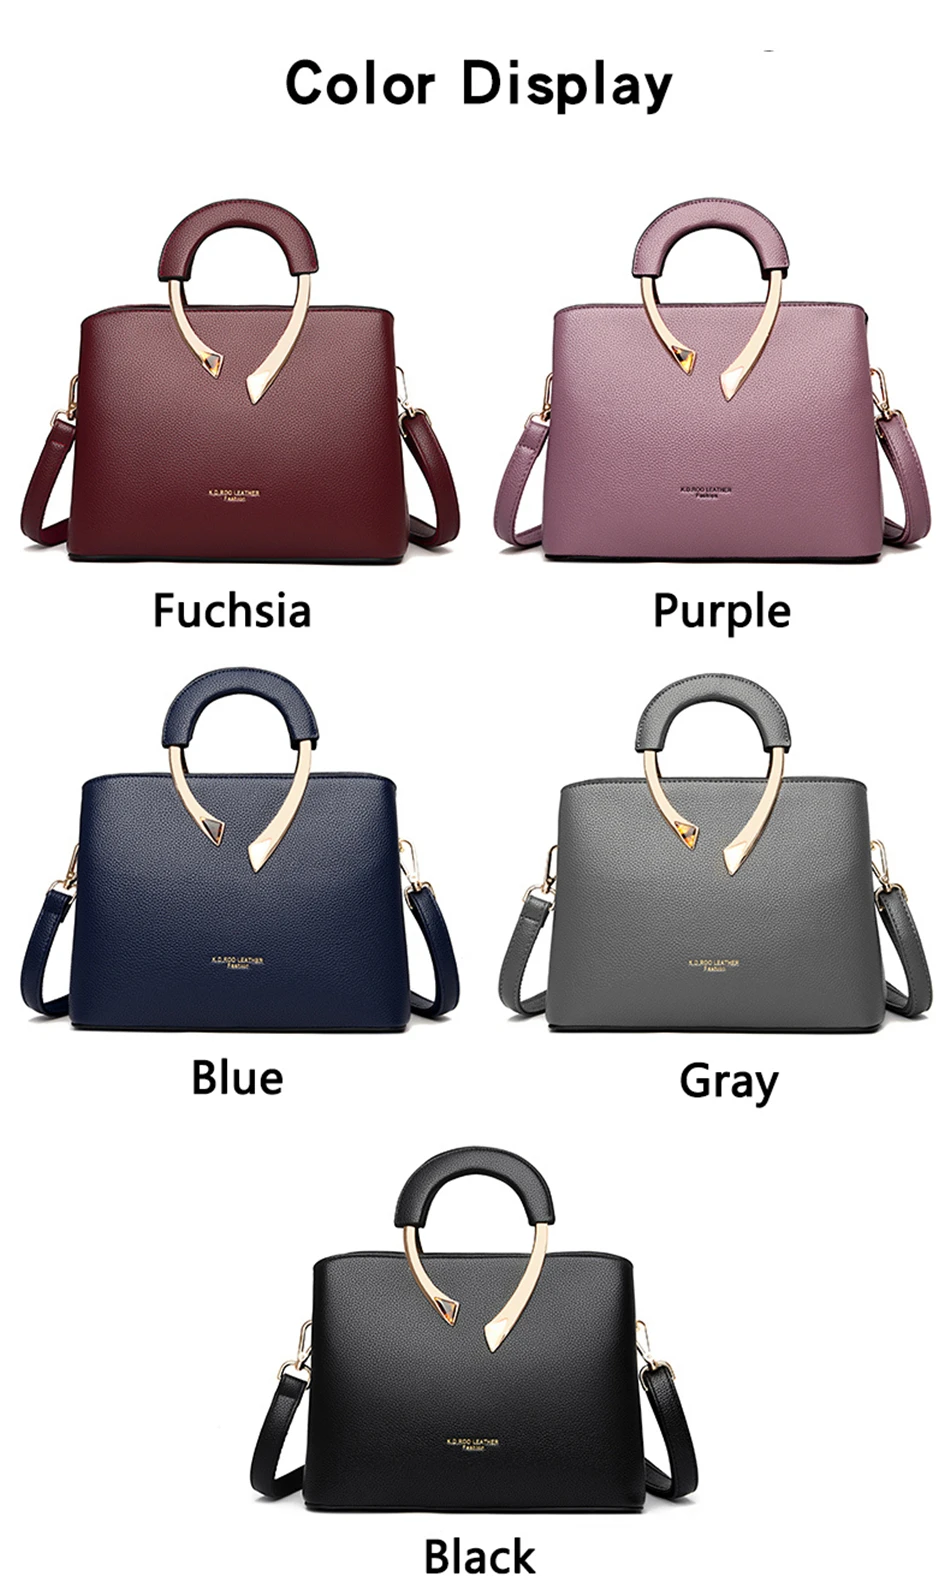 GENUINE VANDERWAH High Quality Leather Casual Tote Luxury Handbags Women Bags Designer Shoulder Crossbody Bags for Women 2021